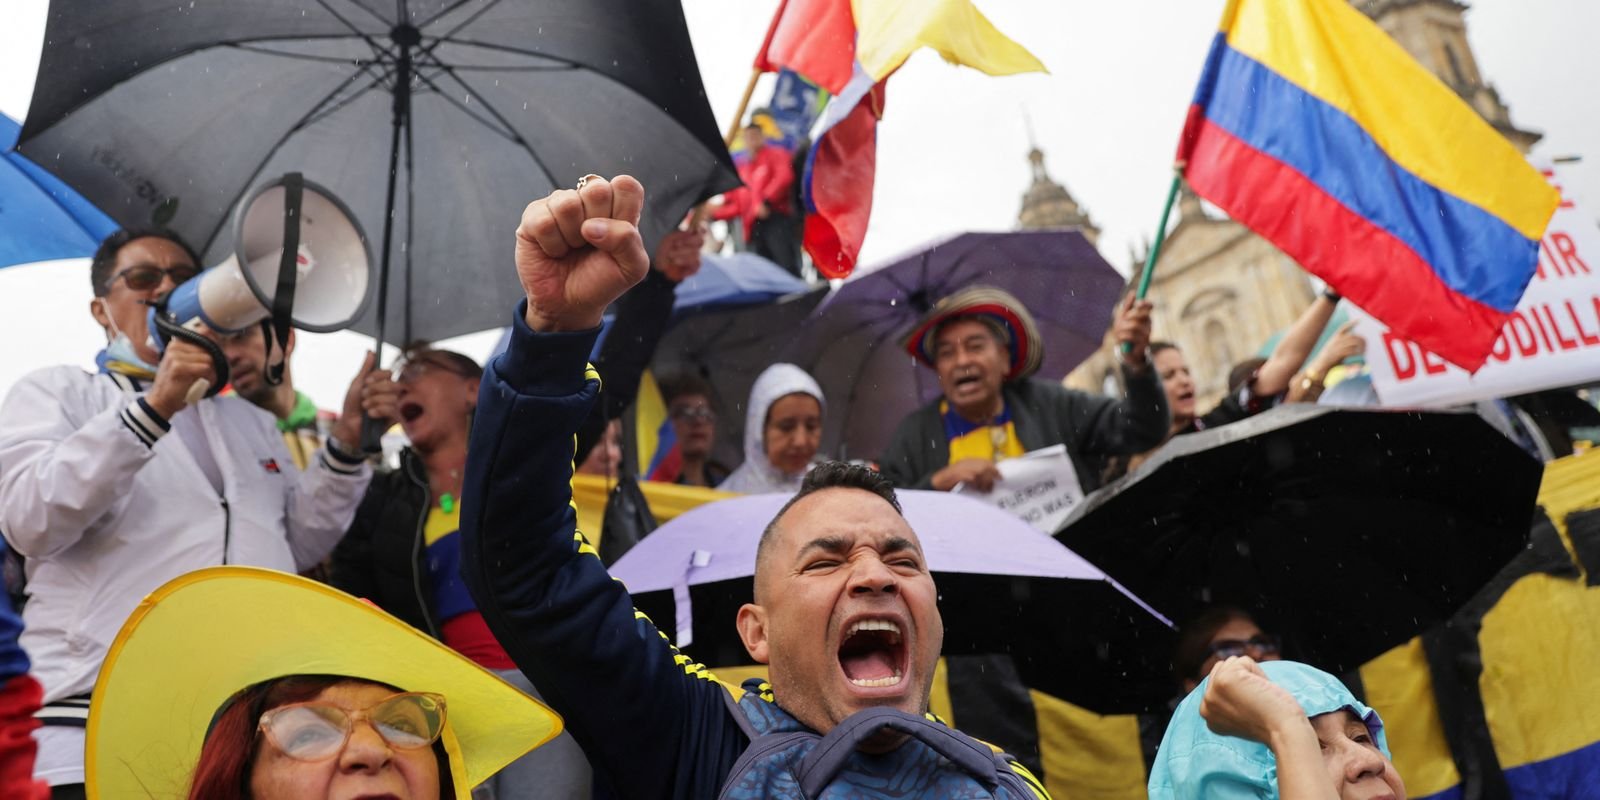 Milhares de colombianos protestam contra reformas econômicas e sociais